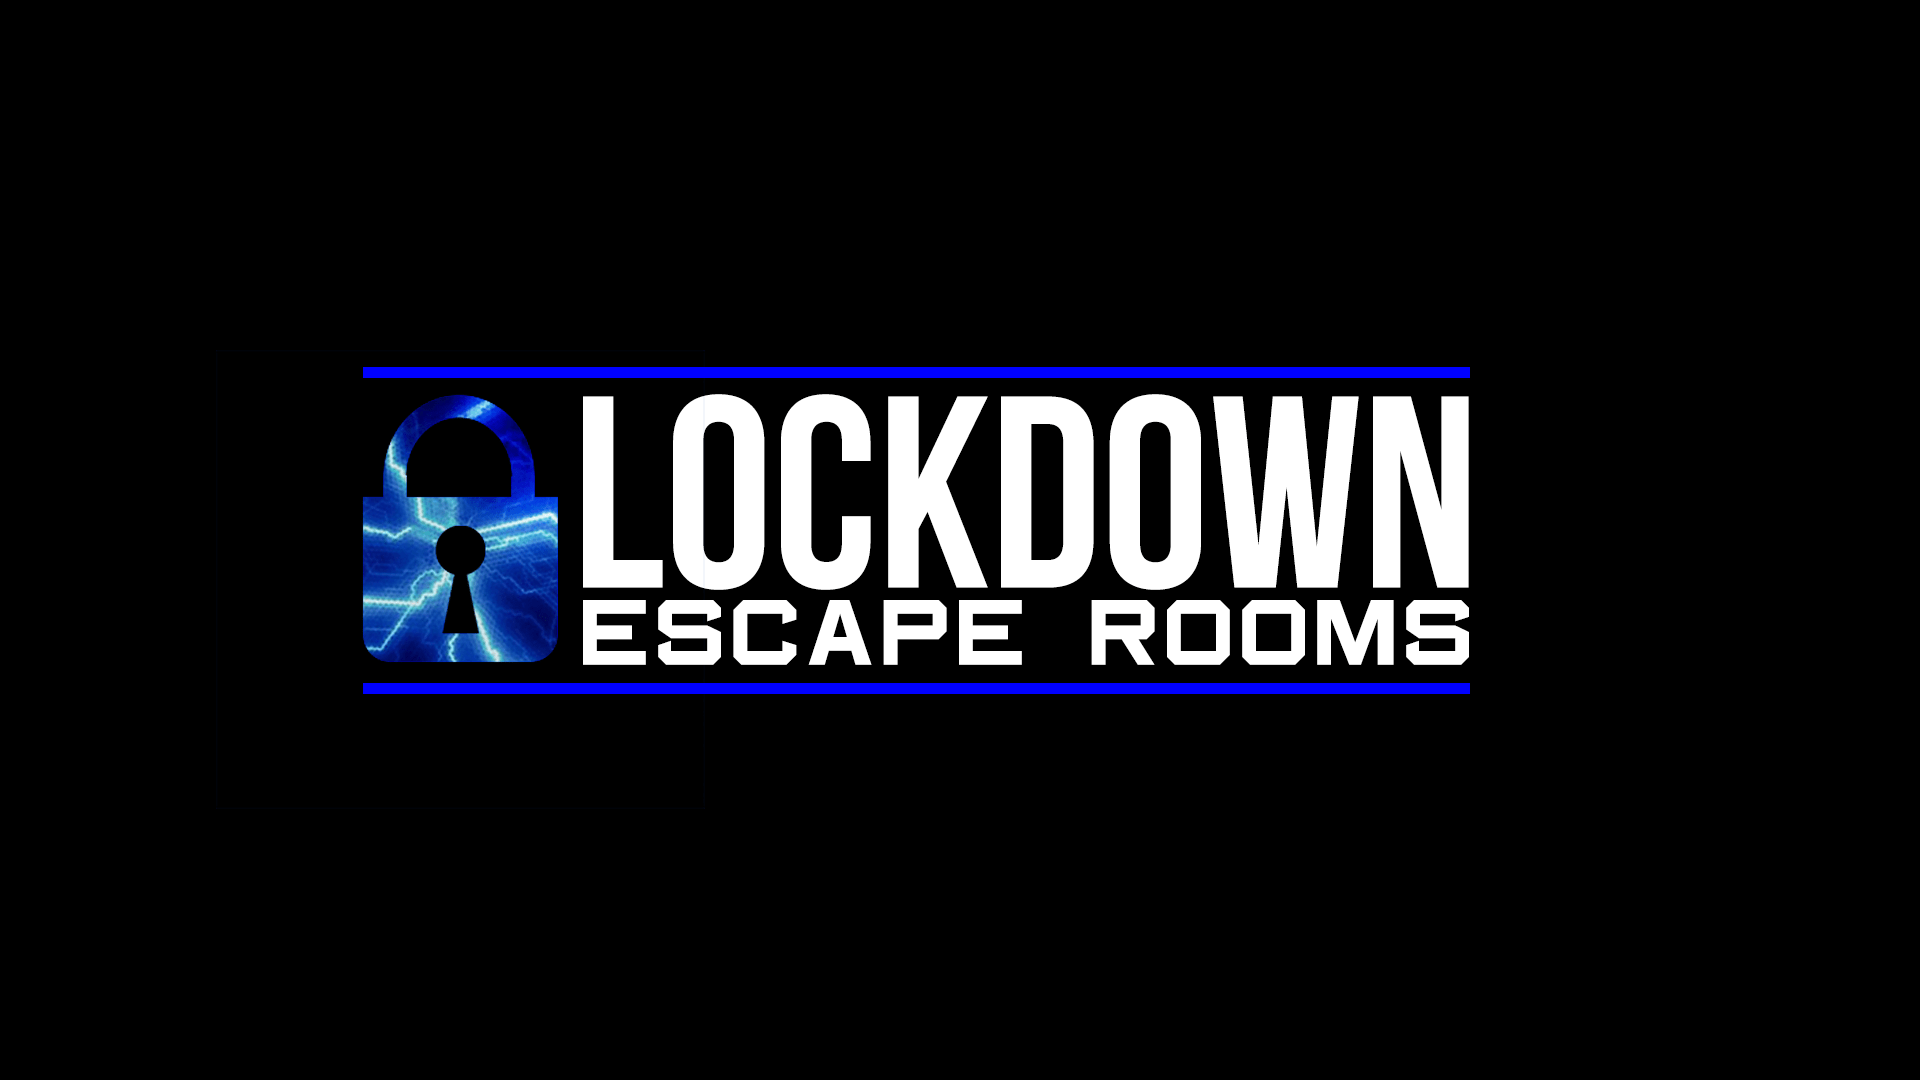 Lockdown Escape Rooms in UK